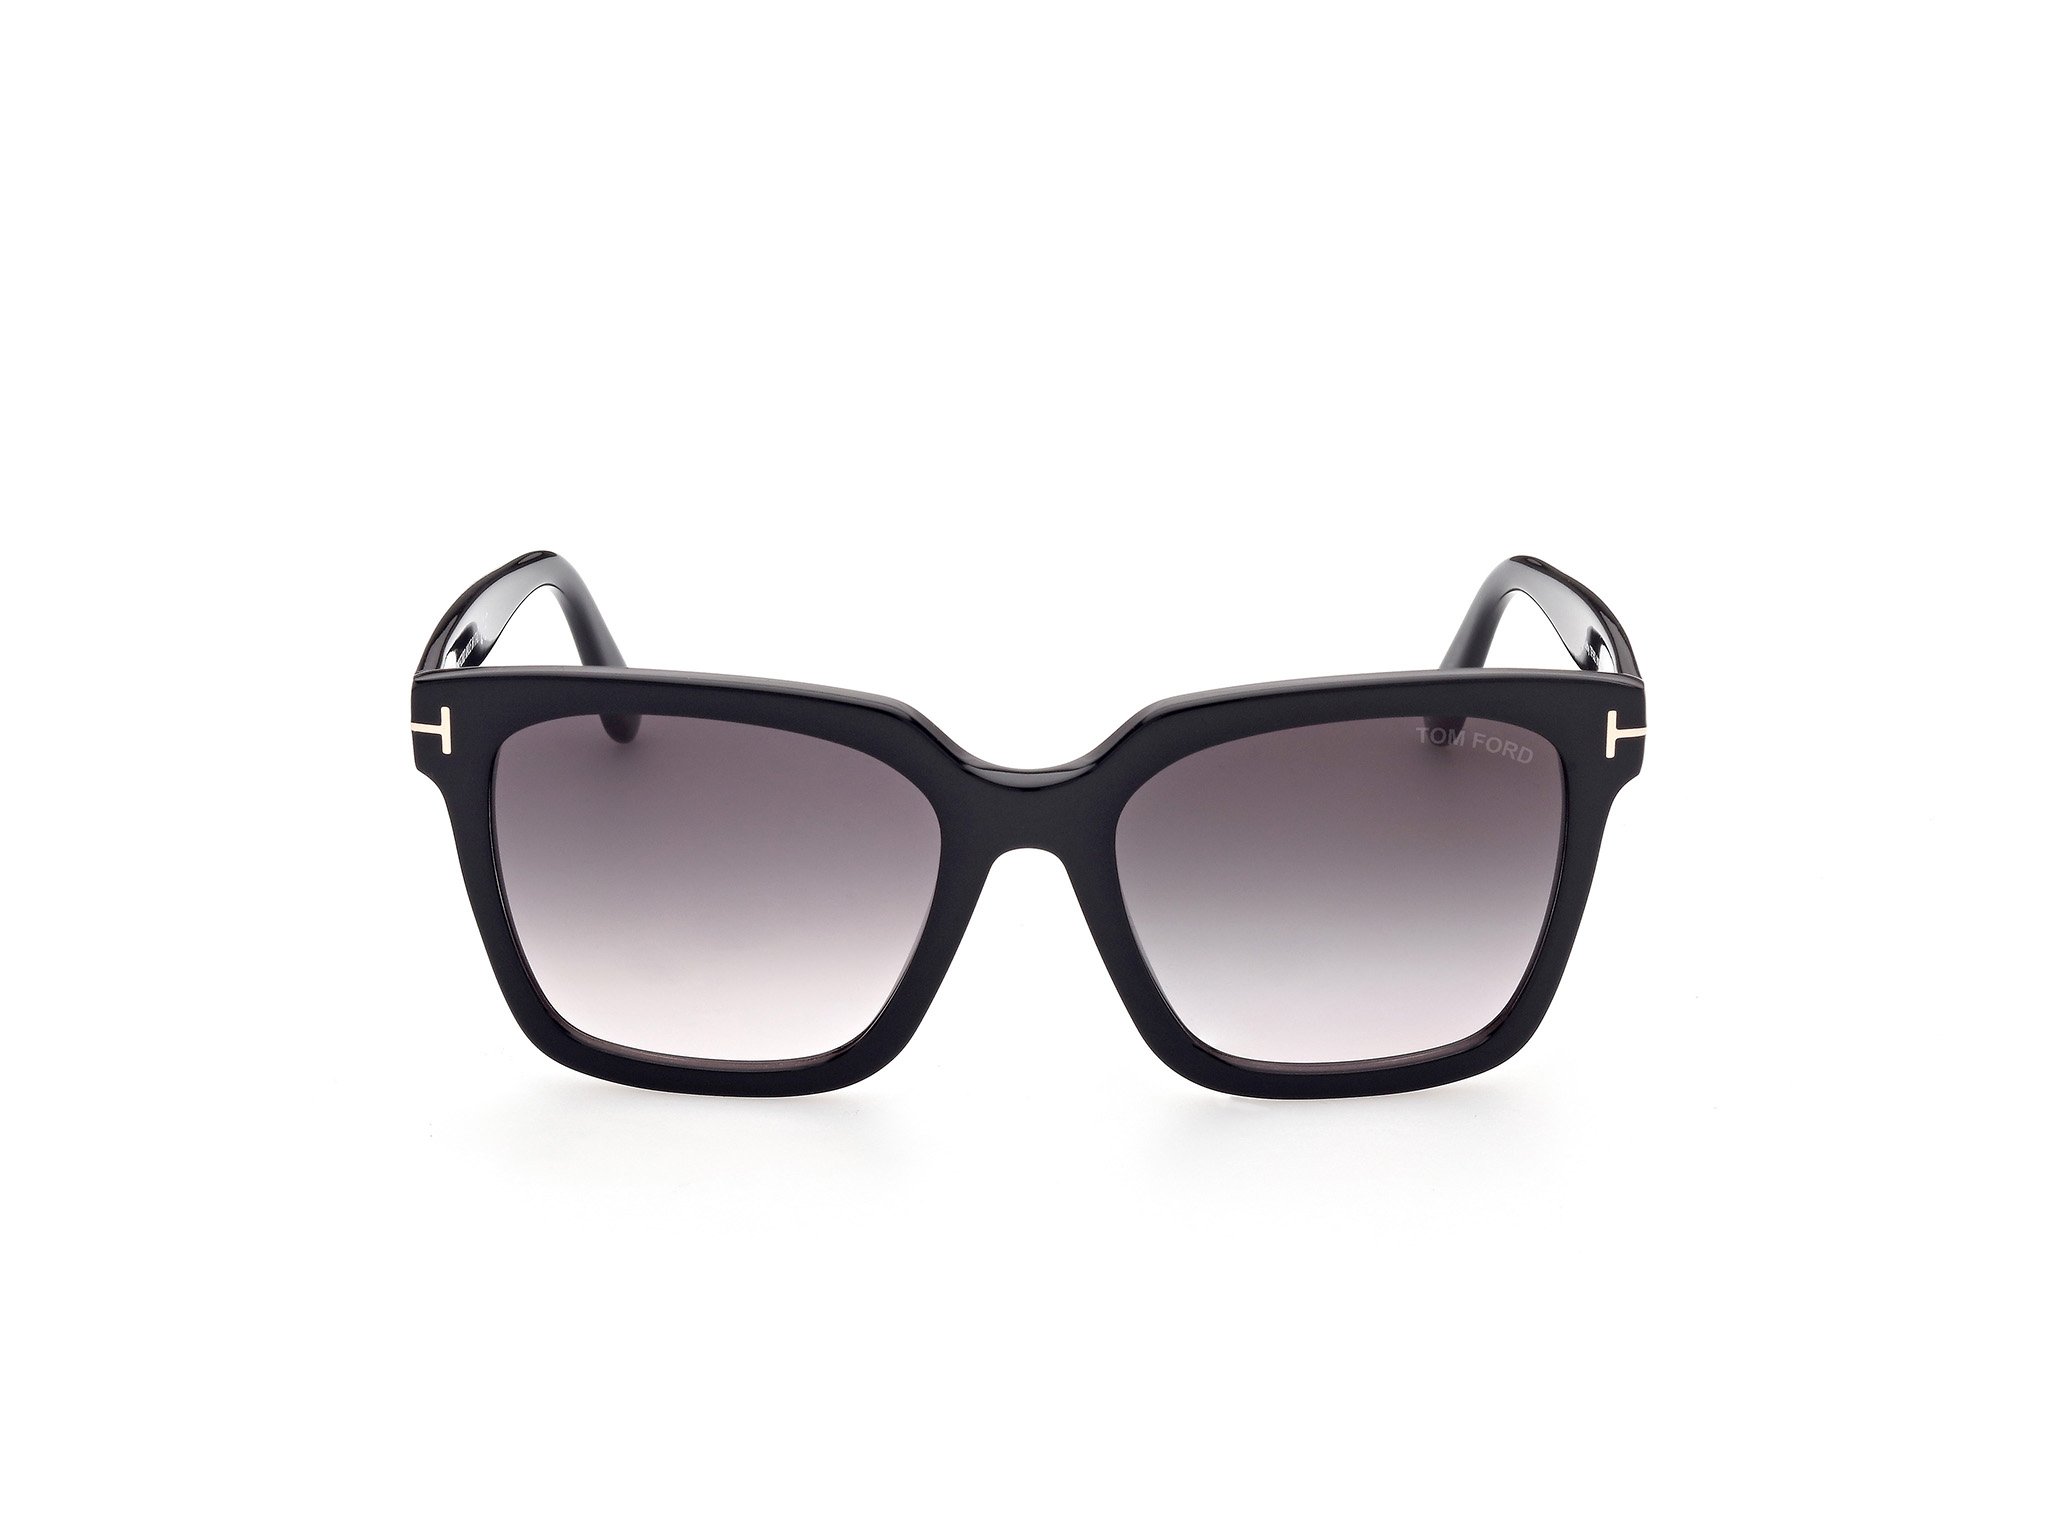 Das Bild zeigt die Sonnenbrille Selby FT0952 von der Marke Tom Ford in schwarz frontal